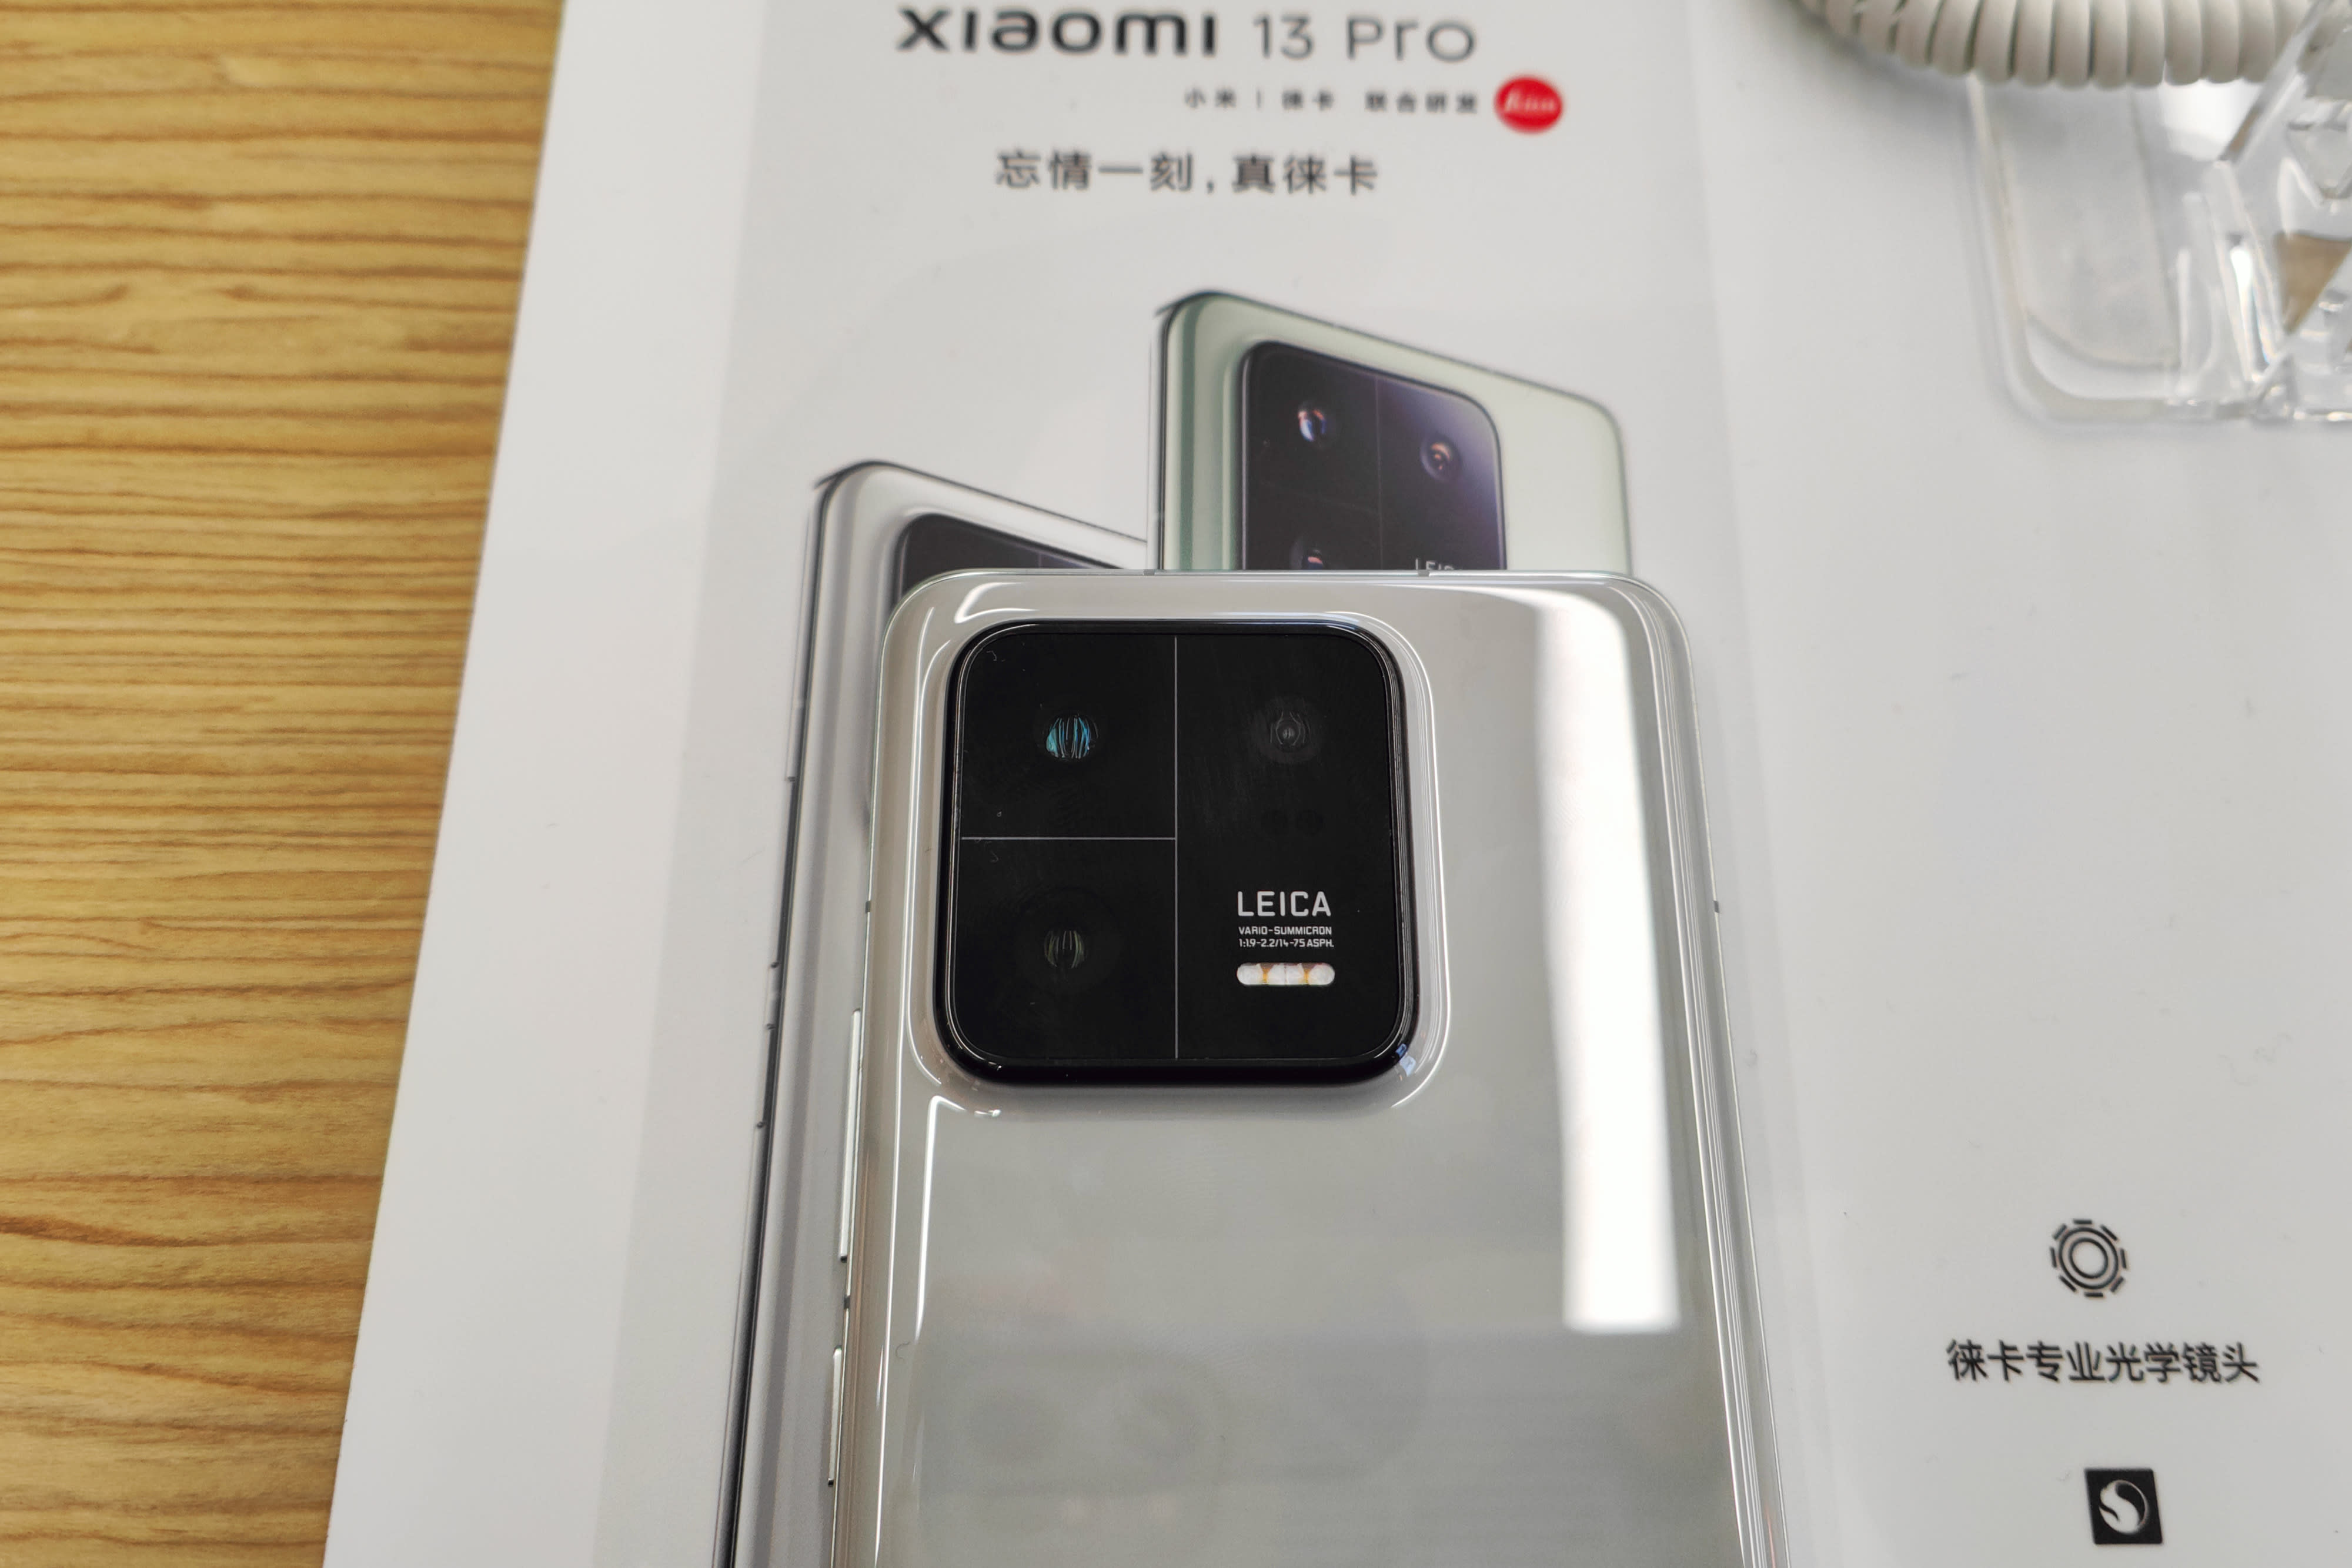 Xiaomi 13 Pro gelanceerd: specificaties, prijs en beschikbaarheid